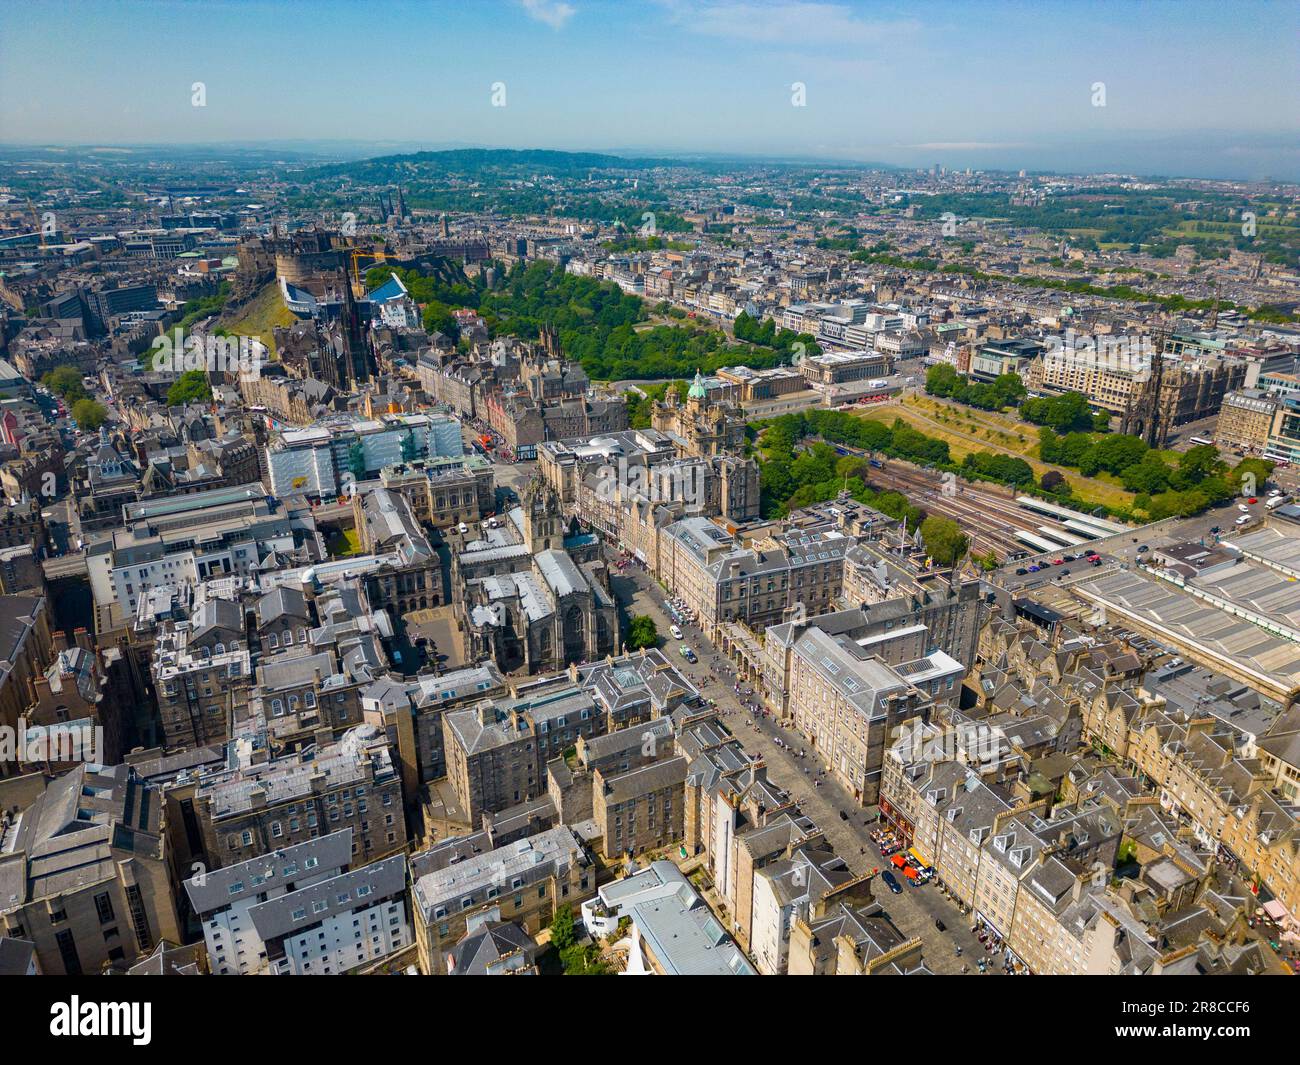 Vue aérienne de la vieille ville d'Édimbourg, site classé au patrimoine mondial de l'UNESCO, Écosse, Royaume-Uni Banque D'Images